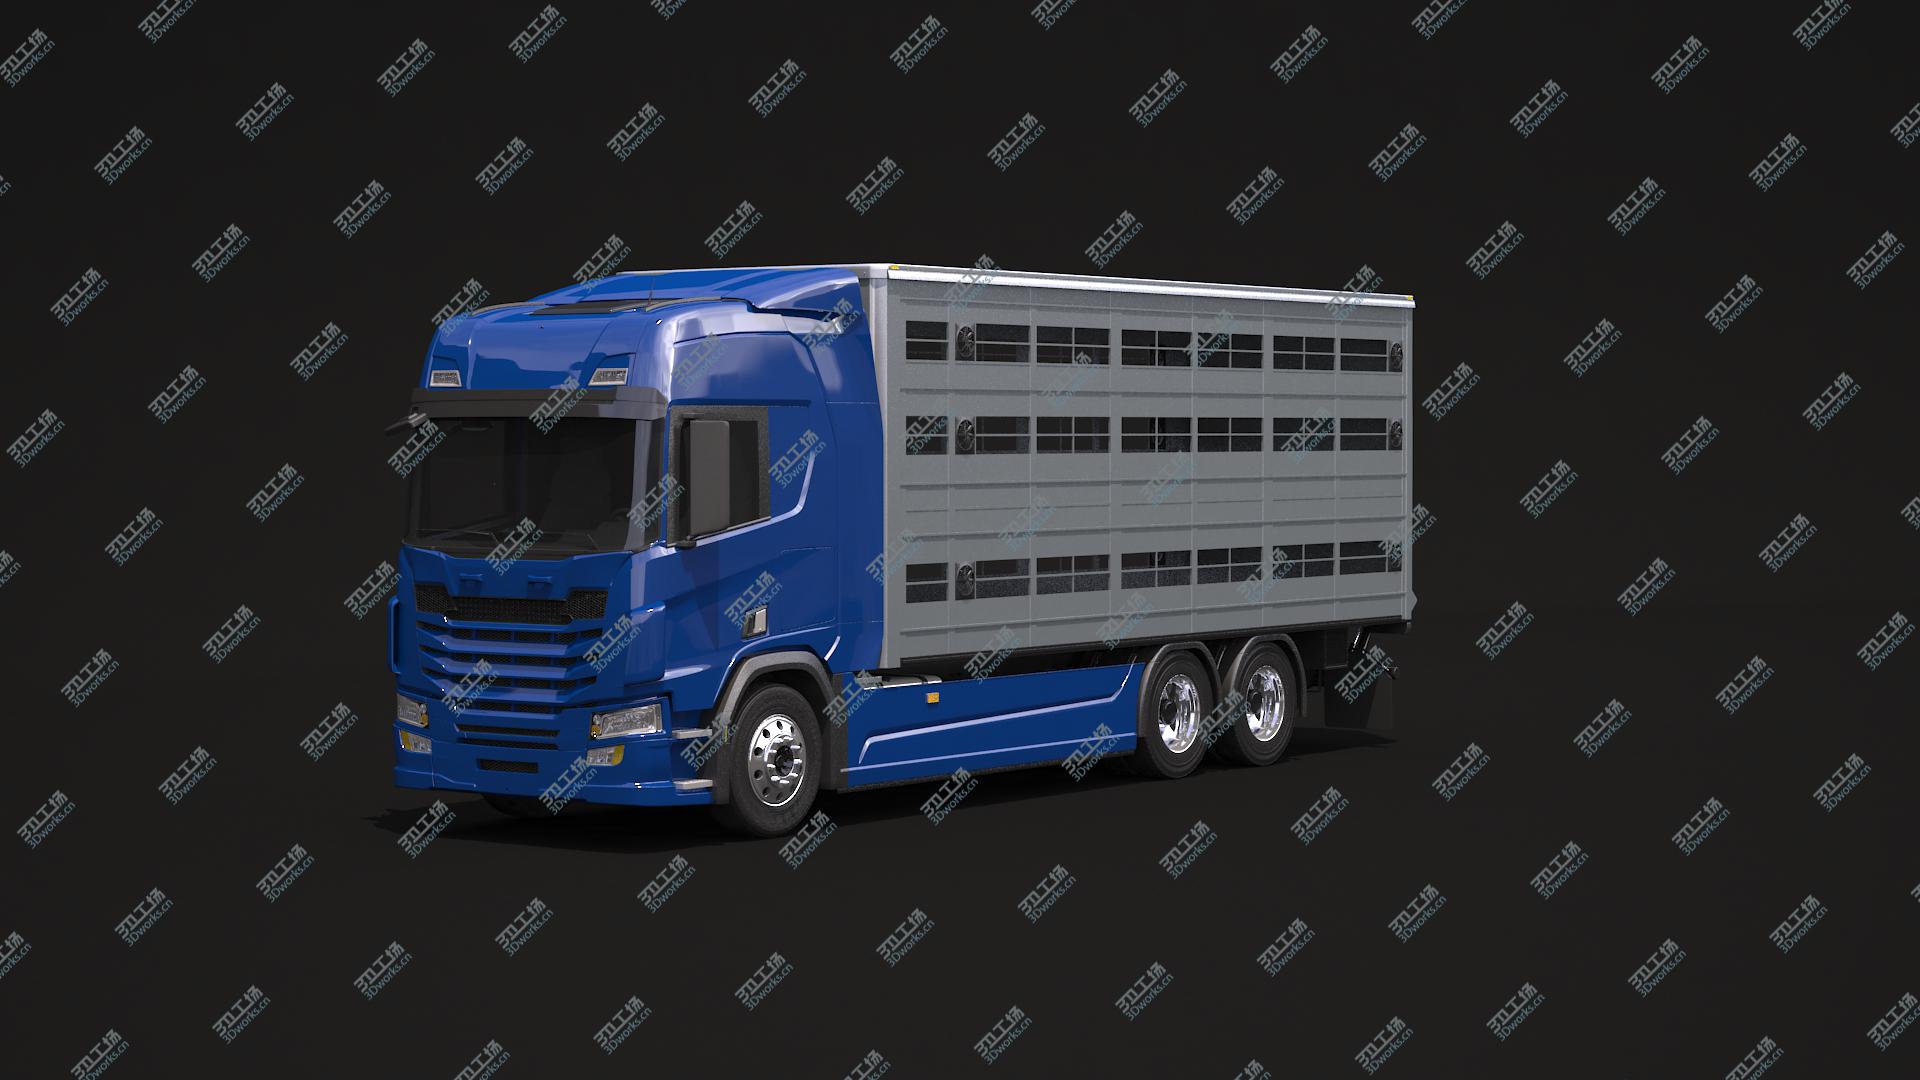 images/goods_img/202104092/3D model Liverstock Truck/2.jpg